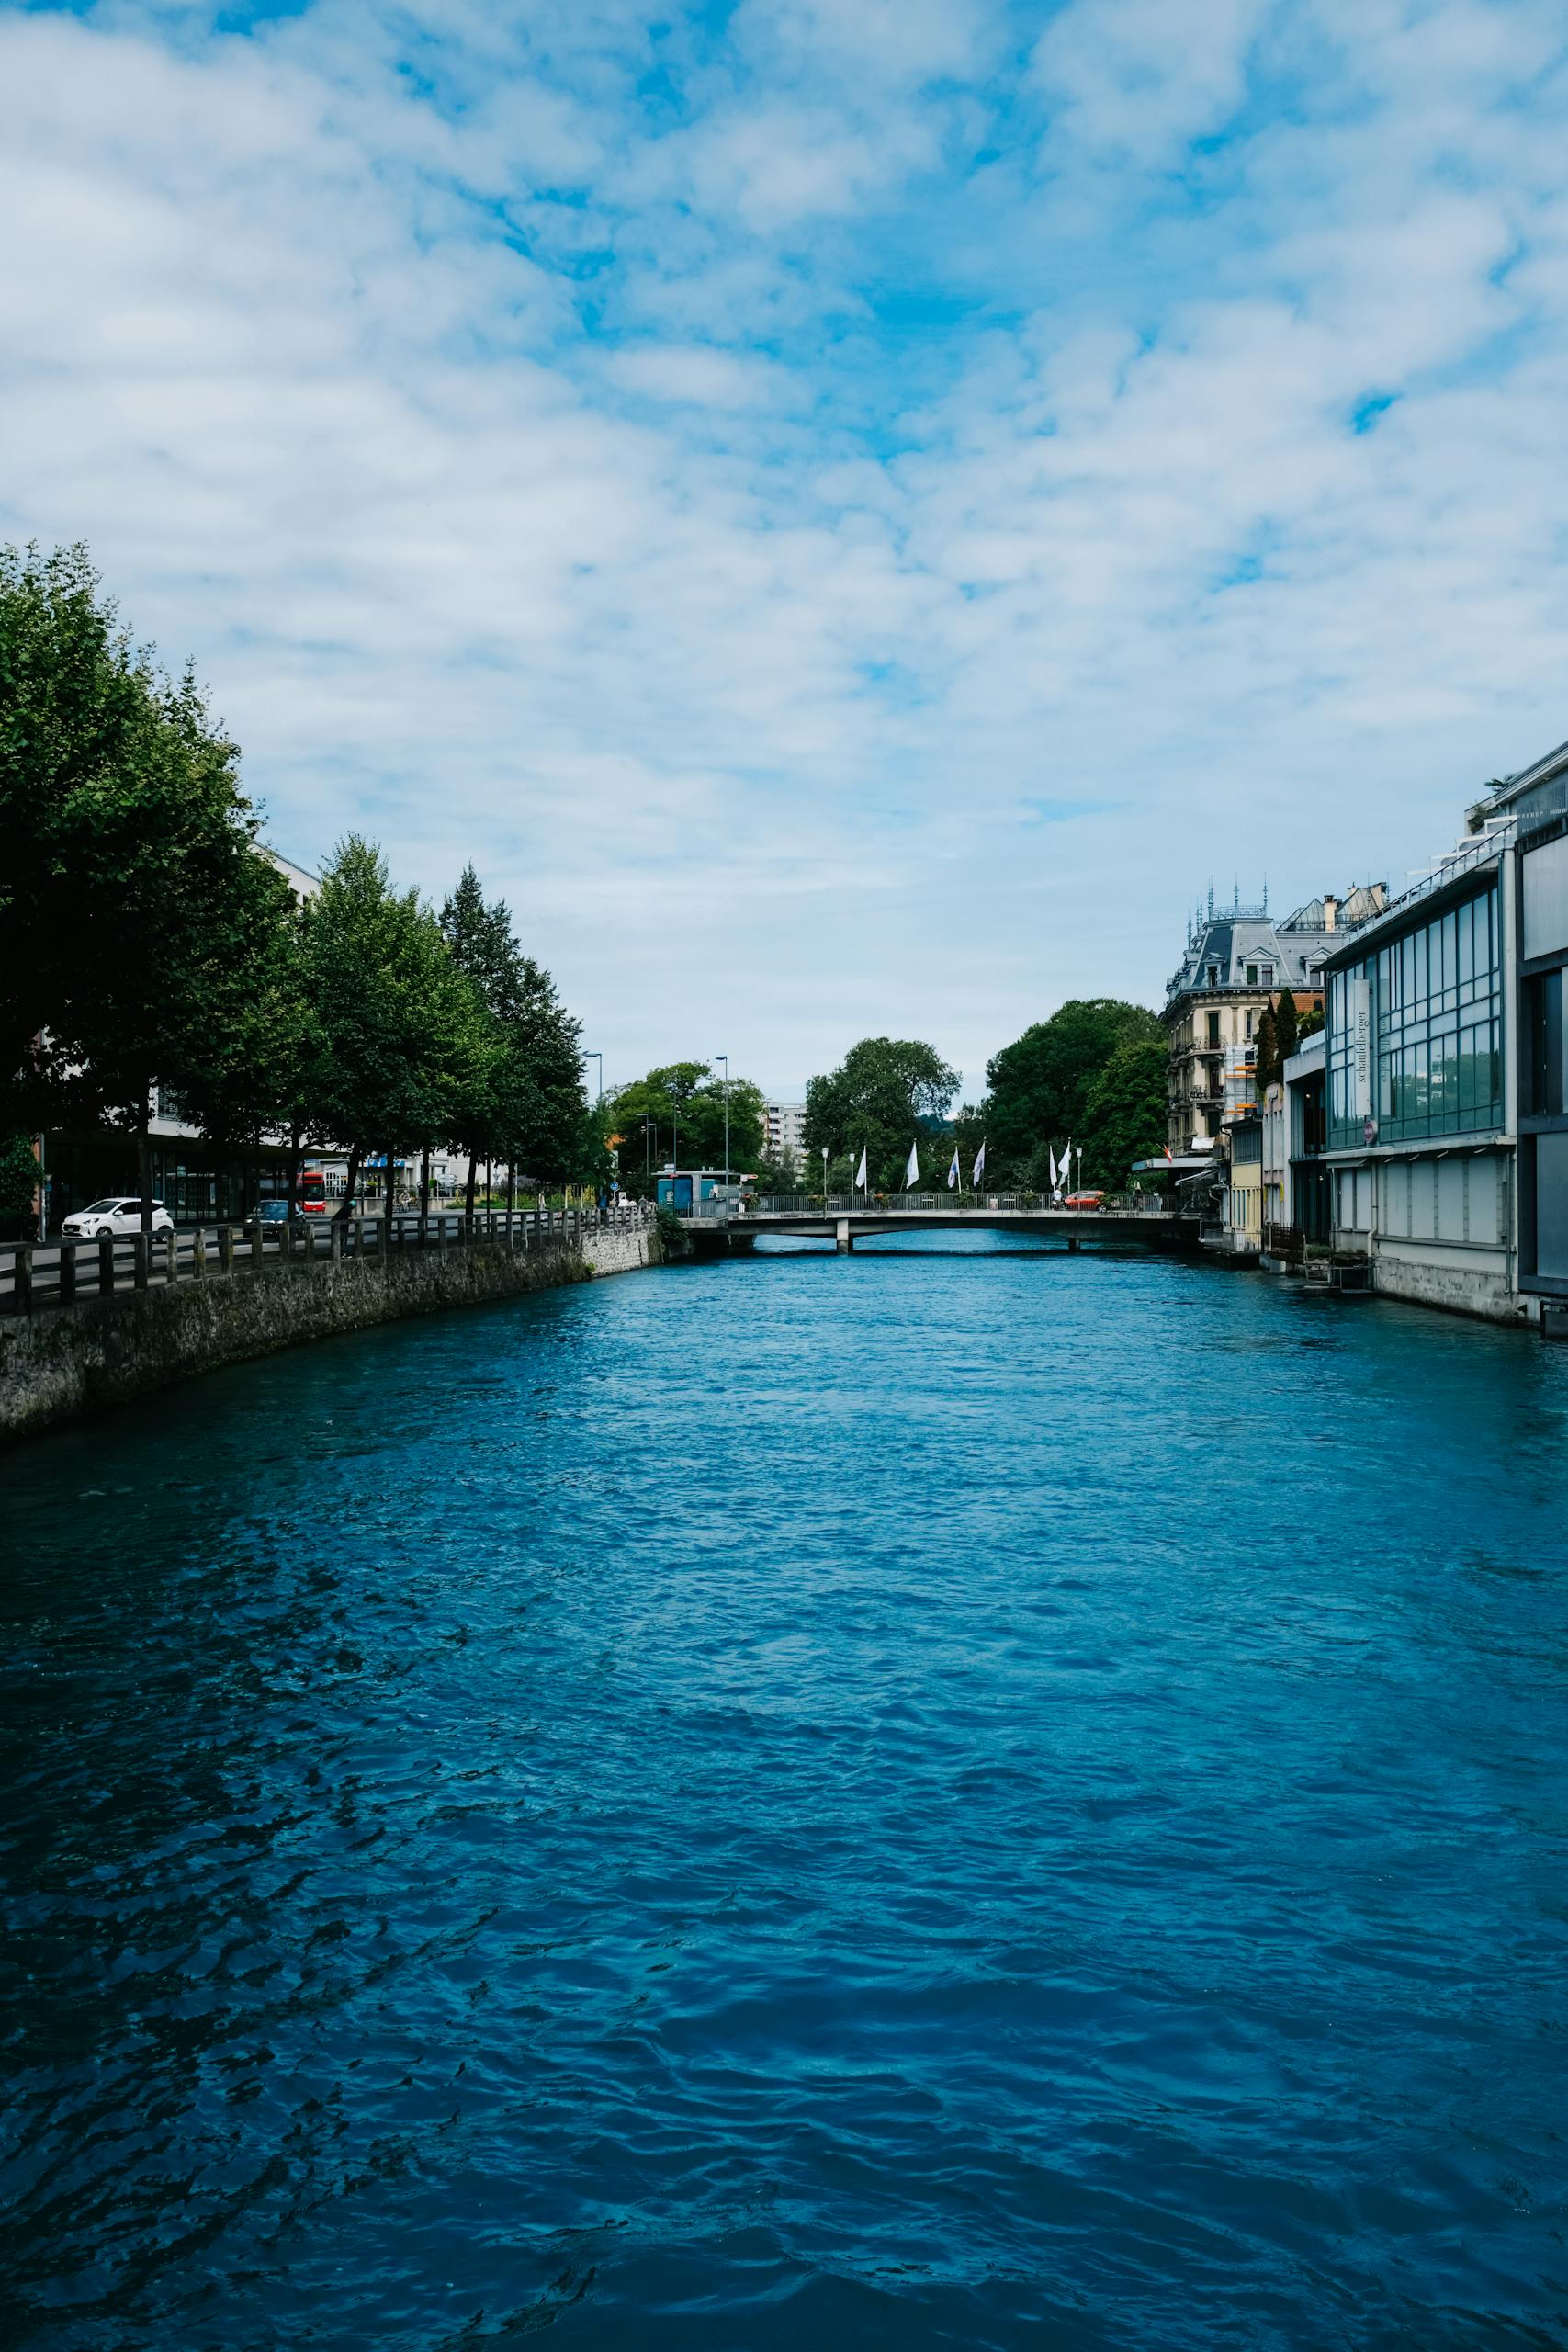 Canal Saint-Martin in Paris, France